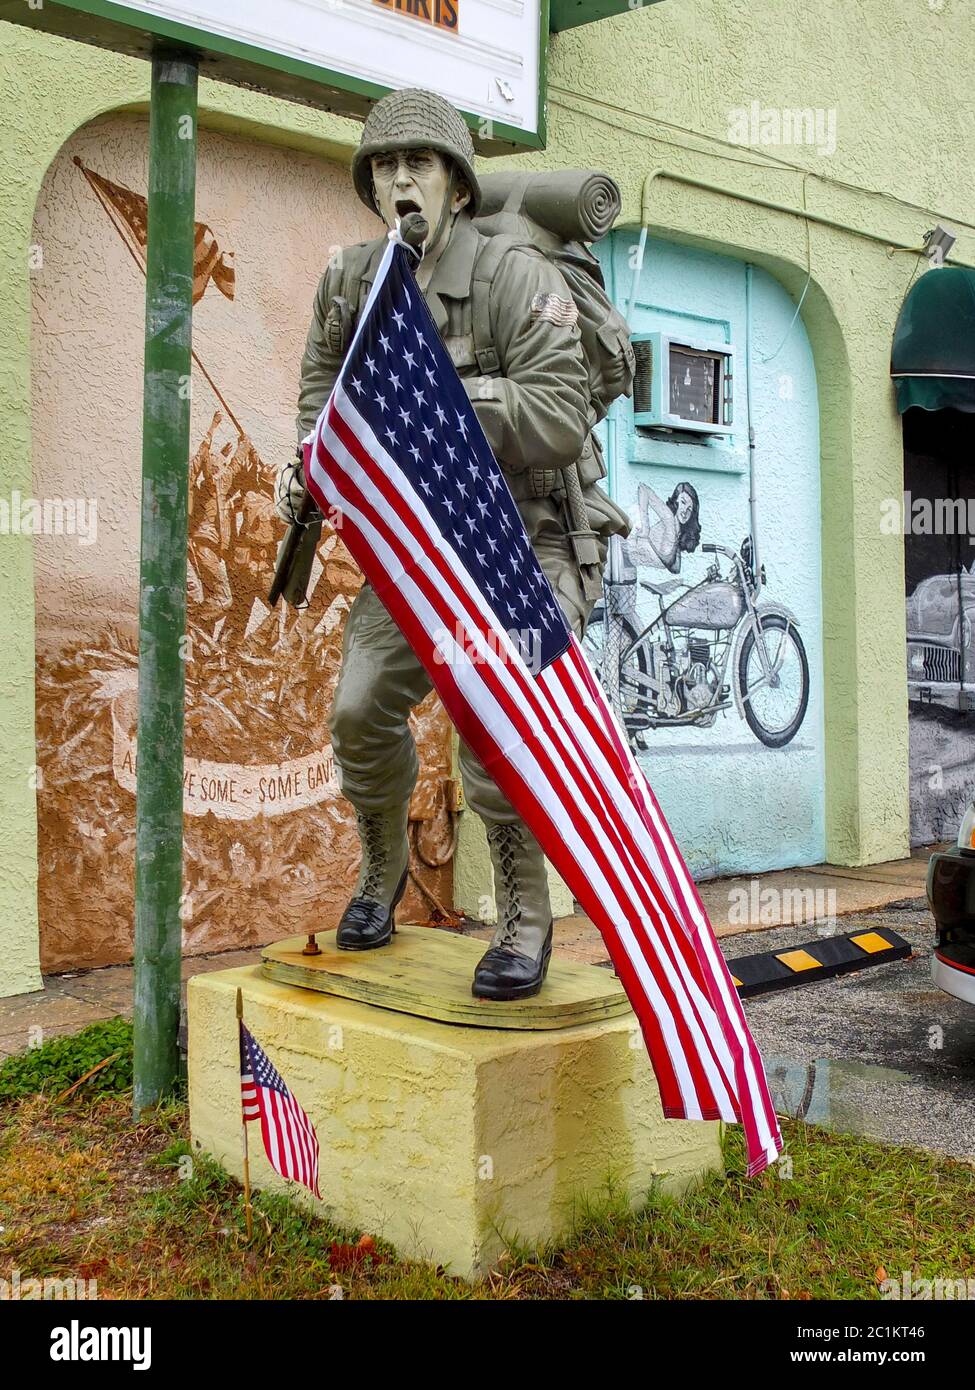 Une statue d'un soldat américain criant portant un drapeau américain est juxtaposée à une murale de la bataille d'Iwo Jima et à une petite fille avec une moto à t Banque D'Images